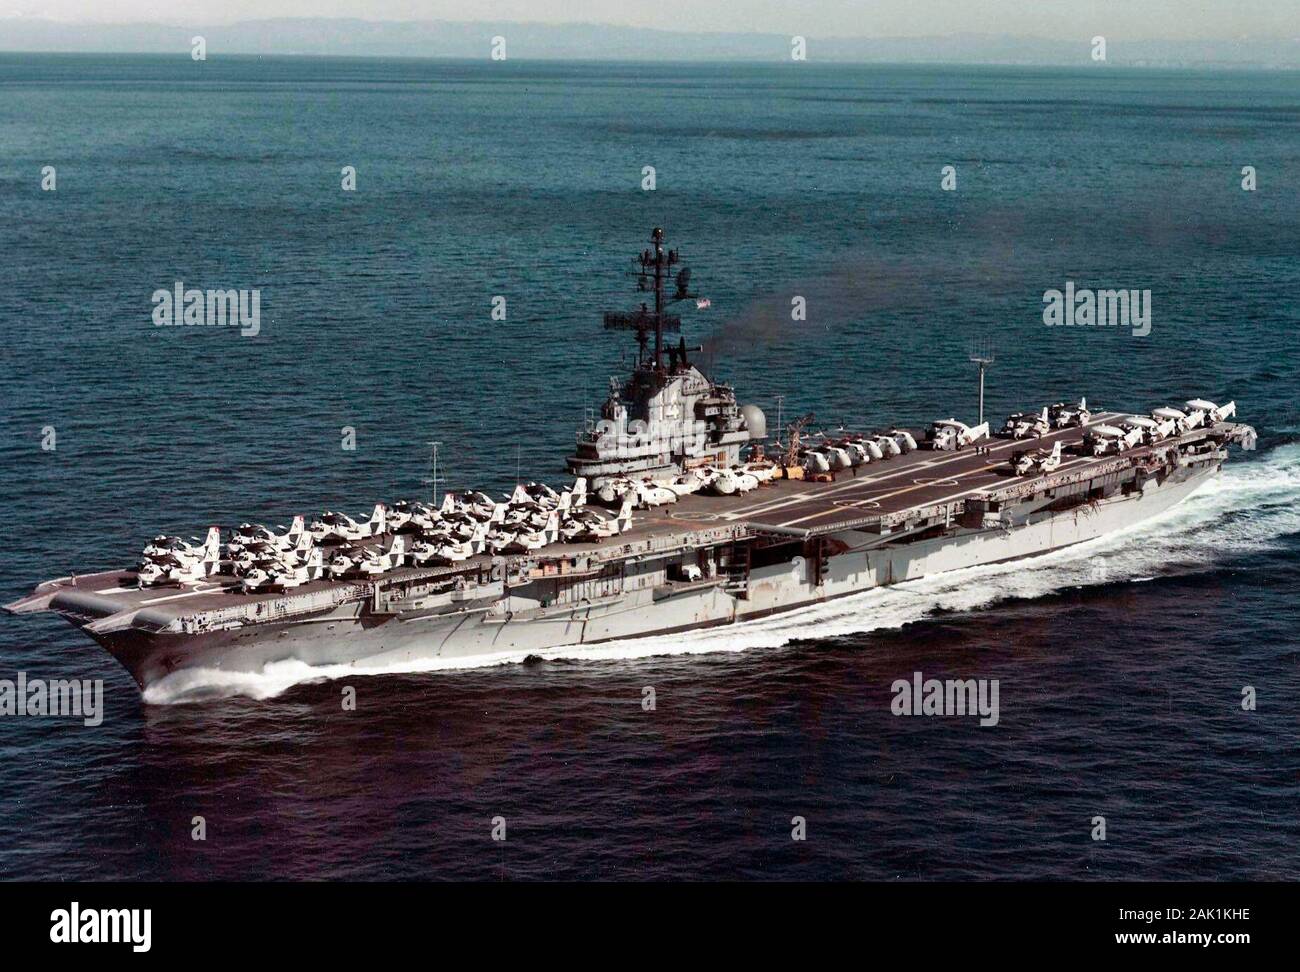 Gli Stati Uniti Navy portaerei USS Ticonderoga (CV-14) in corso al largo della costa della California (USA) legato per il Pacifico occidentale nel 1972. Ticonderoga, con il vettore assegnato Anti-Submarine gruppo aria 53 (CVSG-53), è stato implementato per il Pacifico occidentale dal 17 maggio al 29 luglio 1972. Foto Stock